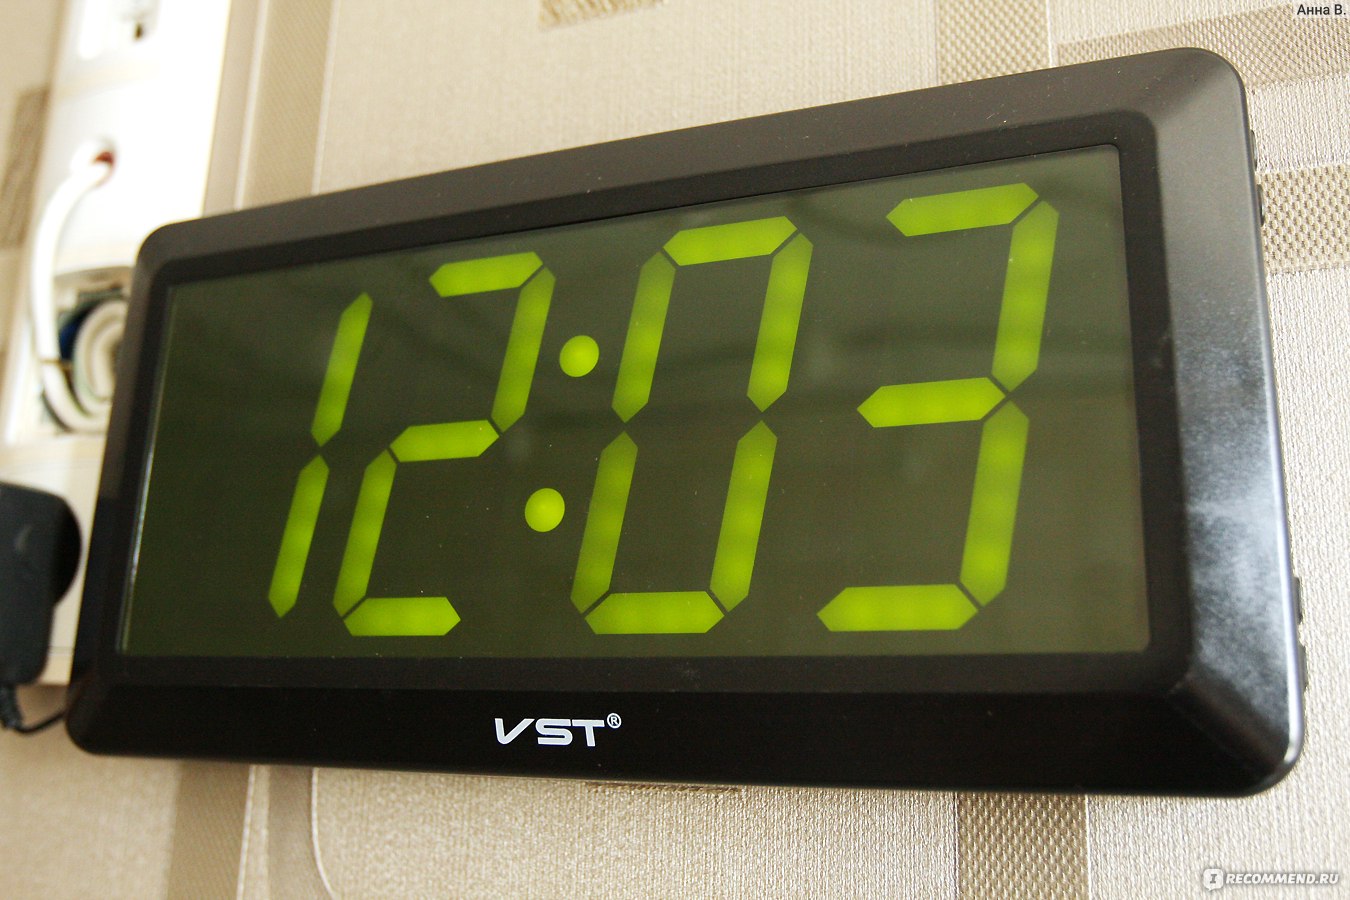 Видео как настроить настольные часы. Часы VST 780. Настенные часы VST 780. Часы VST настенные 780s. VST-780) зеленая подсветка.